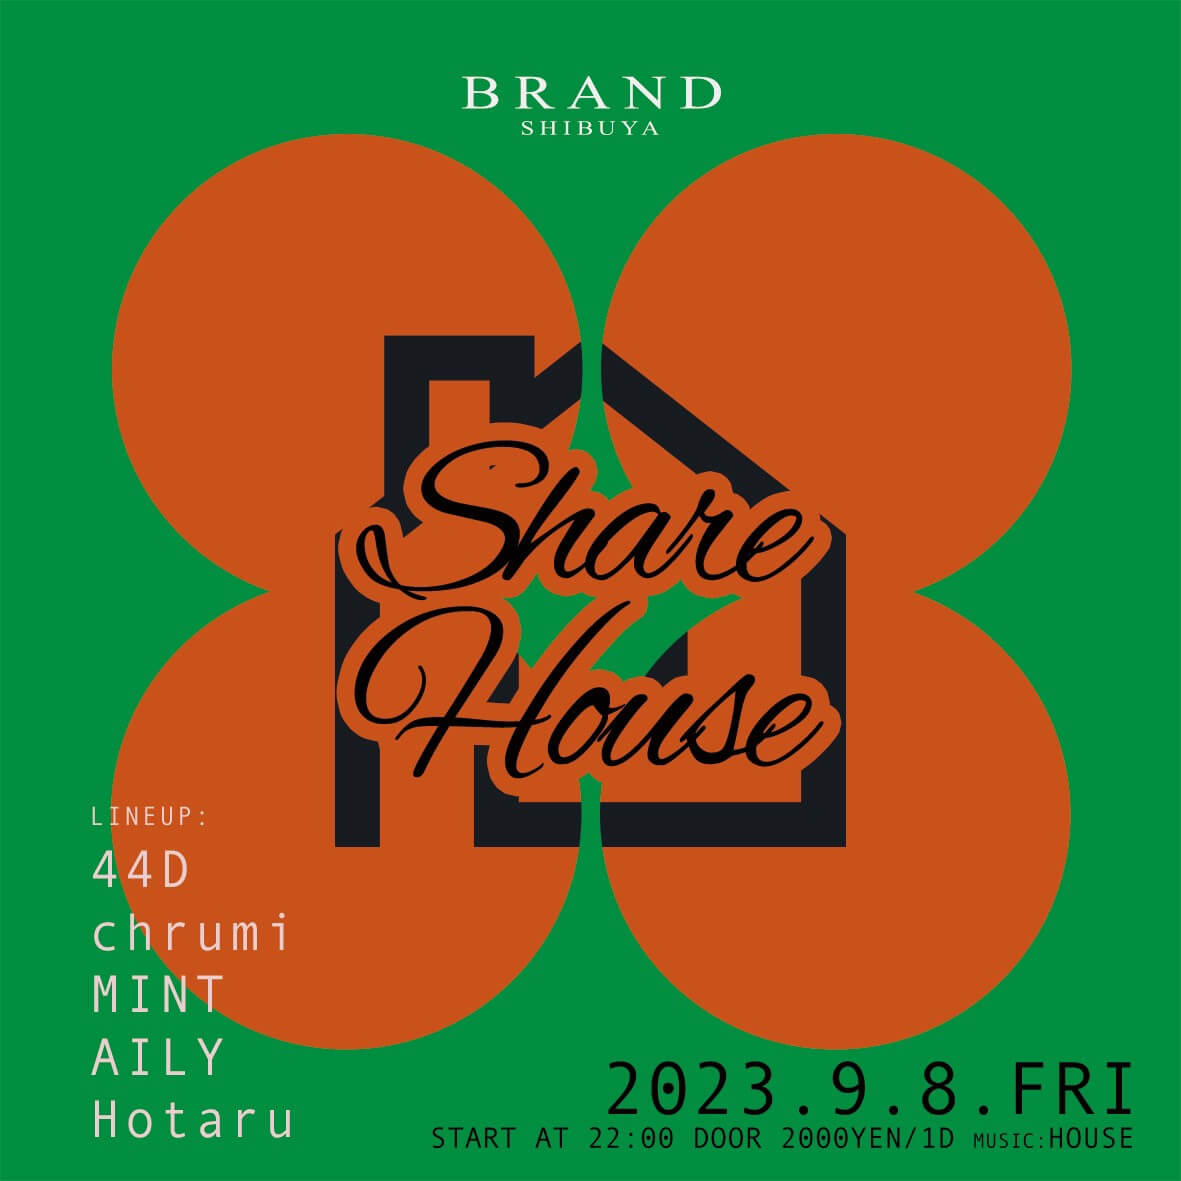 Share House 2023年09月08日（金曜日）に渋谷 クラブのBRAND SHIBUYAで開催されるHOUSEイベント